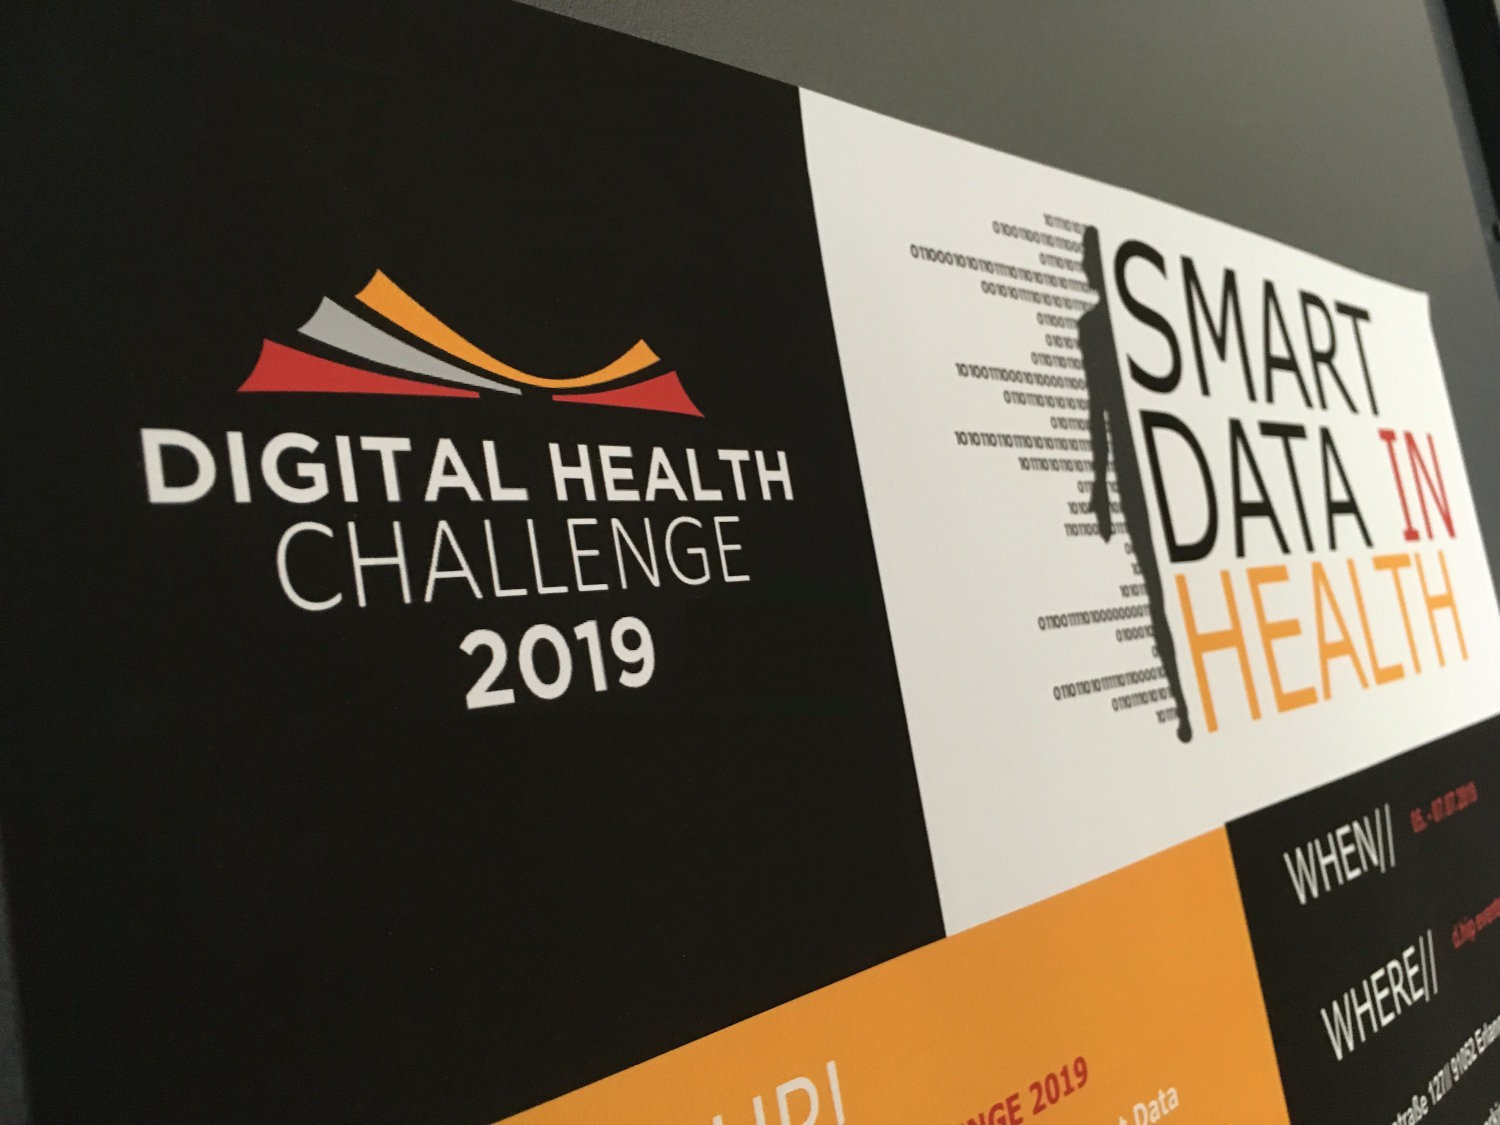 In den Farben schhwarz-weiß-goldorange gehaltenes Plakat mit einem Logo der Digital Health Challenge und etwas dahinter einer im Schnitt dargestellten Person mit Zahlenkollonnen und der Aufschrift "Smart Data In Health".